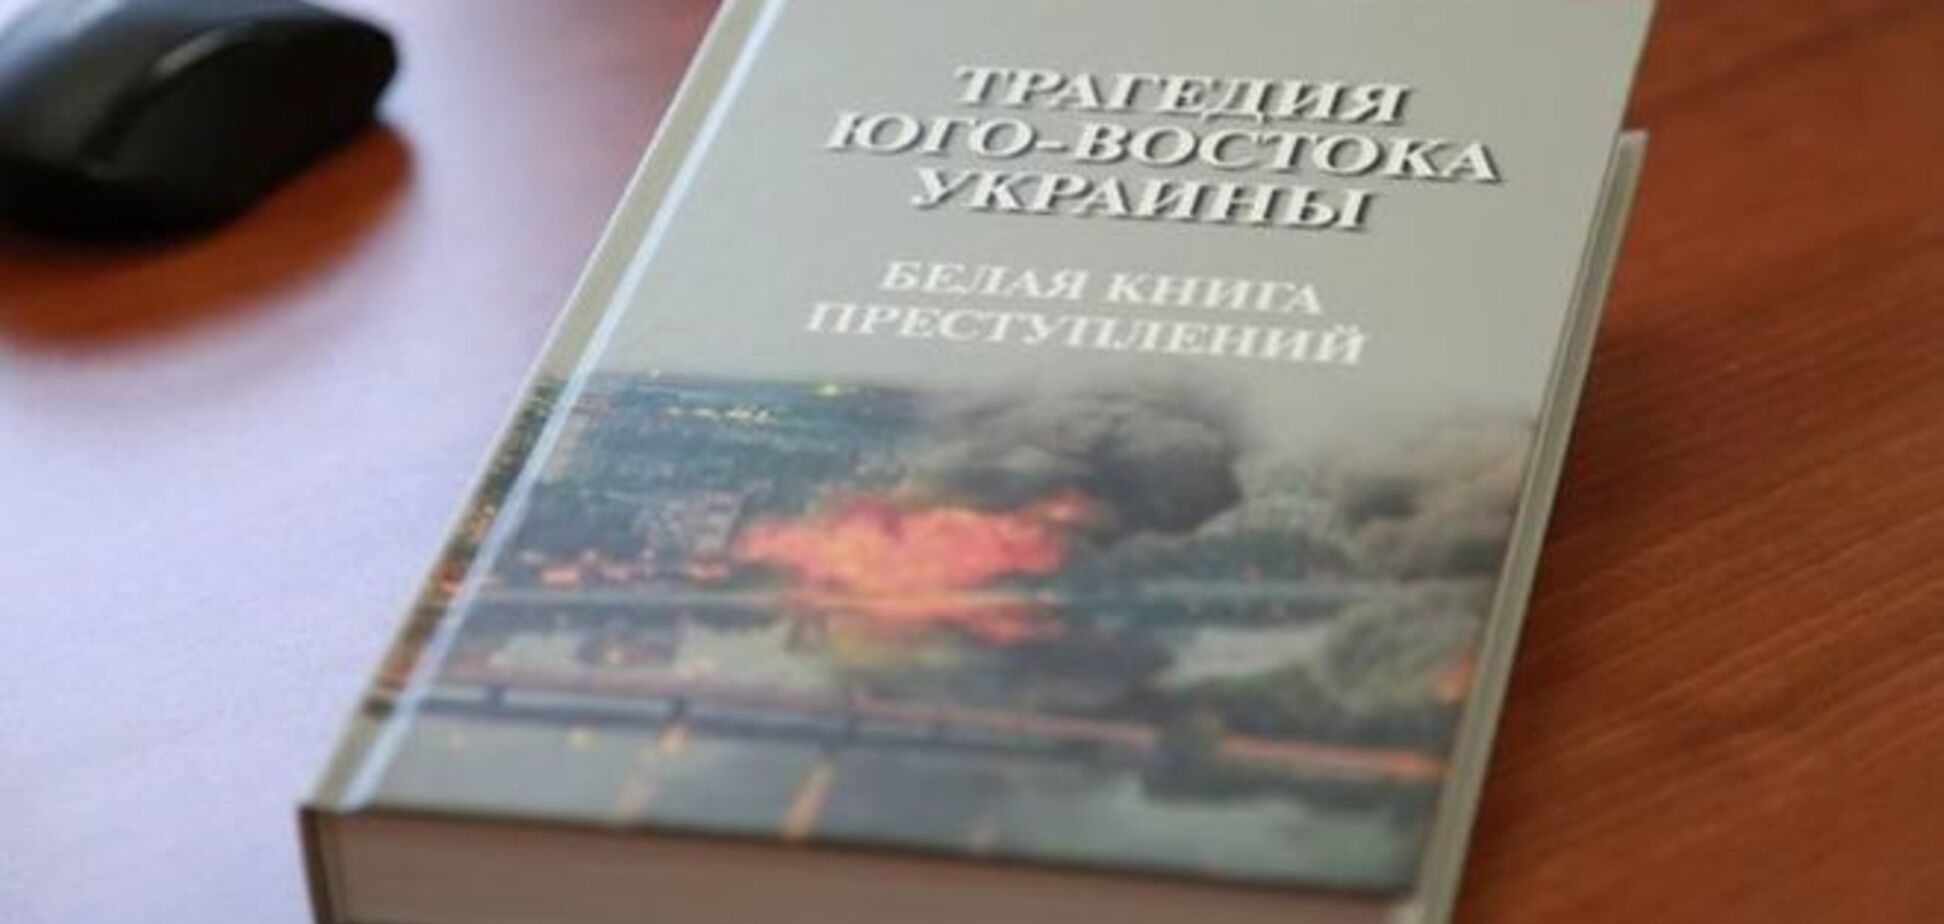 Слідком Росії на основі фейкових фото сфабрикував книгу про 'злочини СБУ'